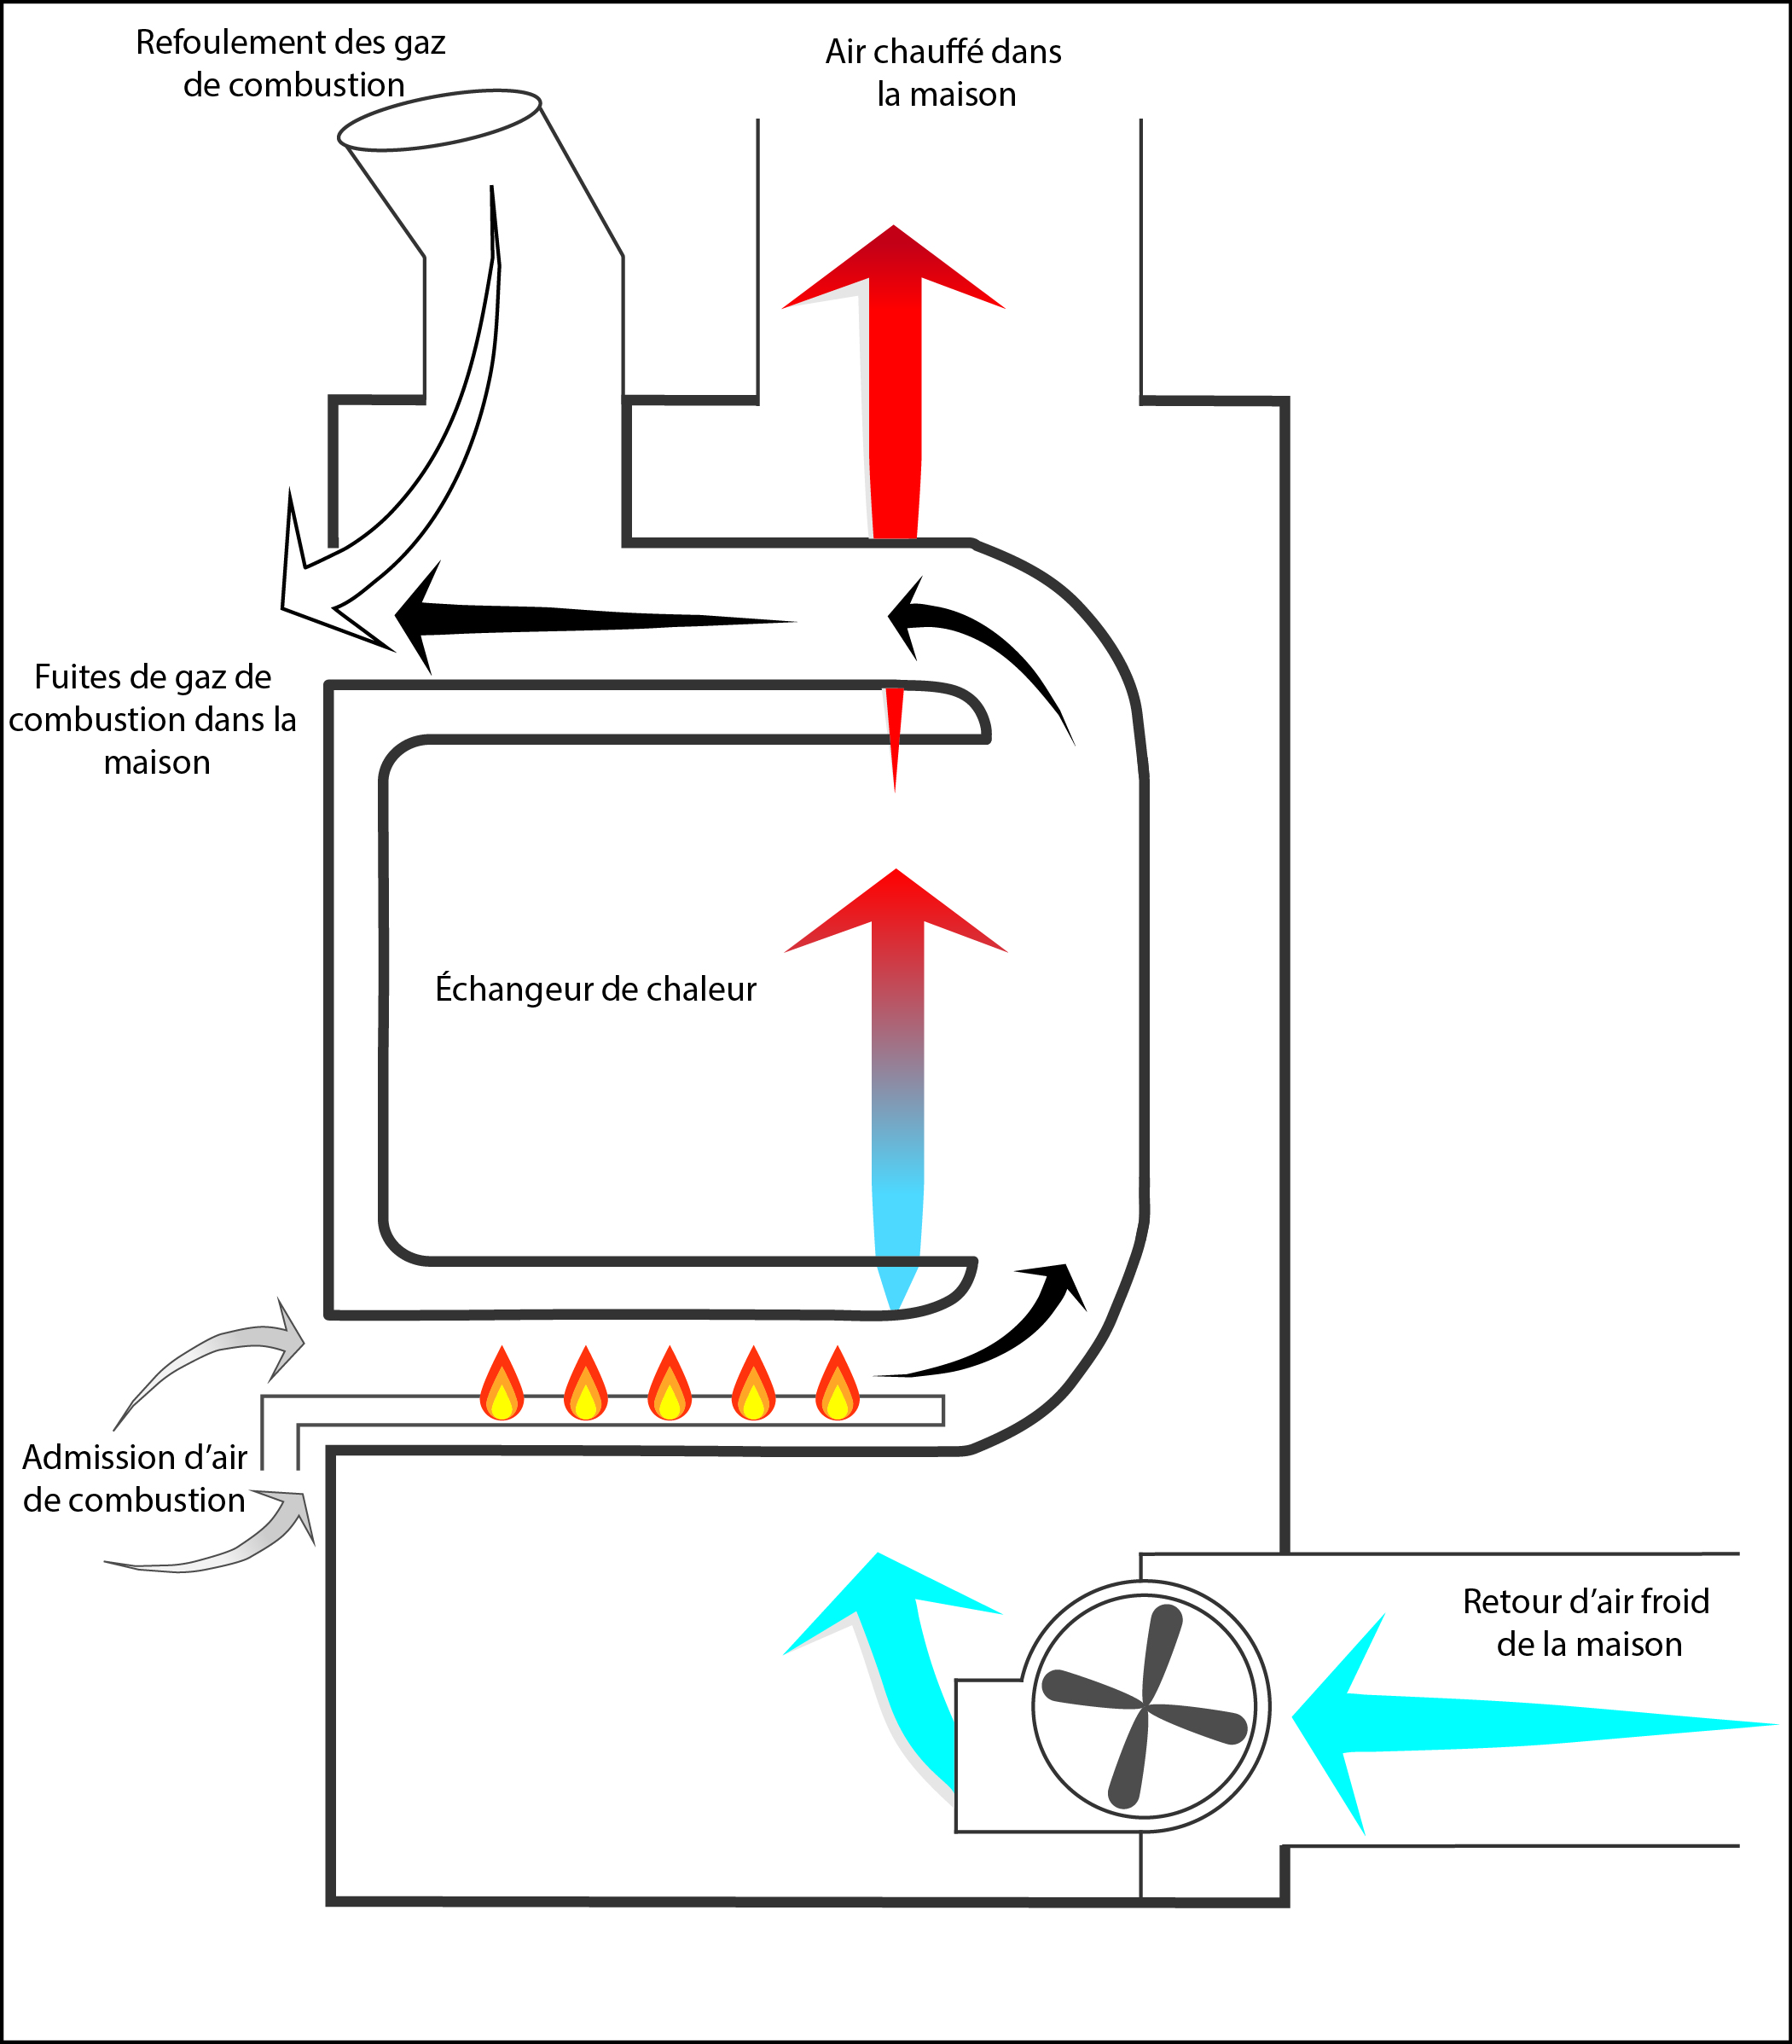 Figure 2 - Fuites de gaz de combustion par l’admission d’air de dilution d’un appareil au gaz à tirage naturel